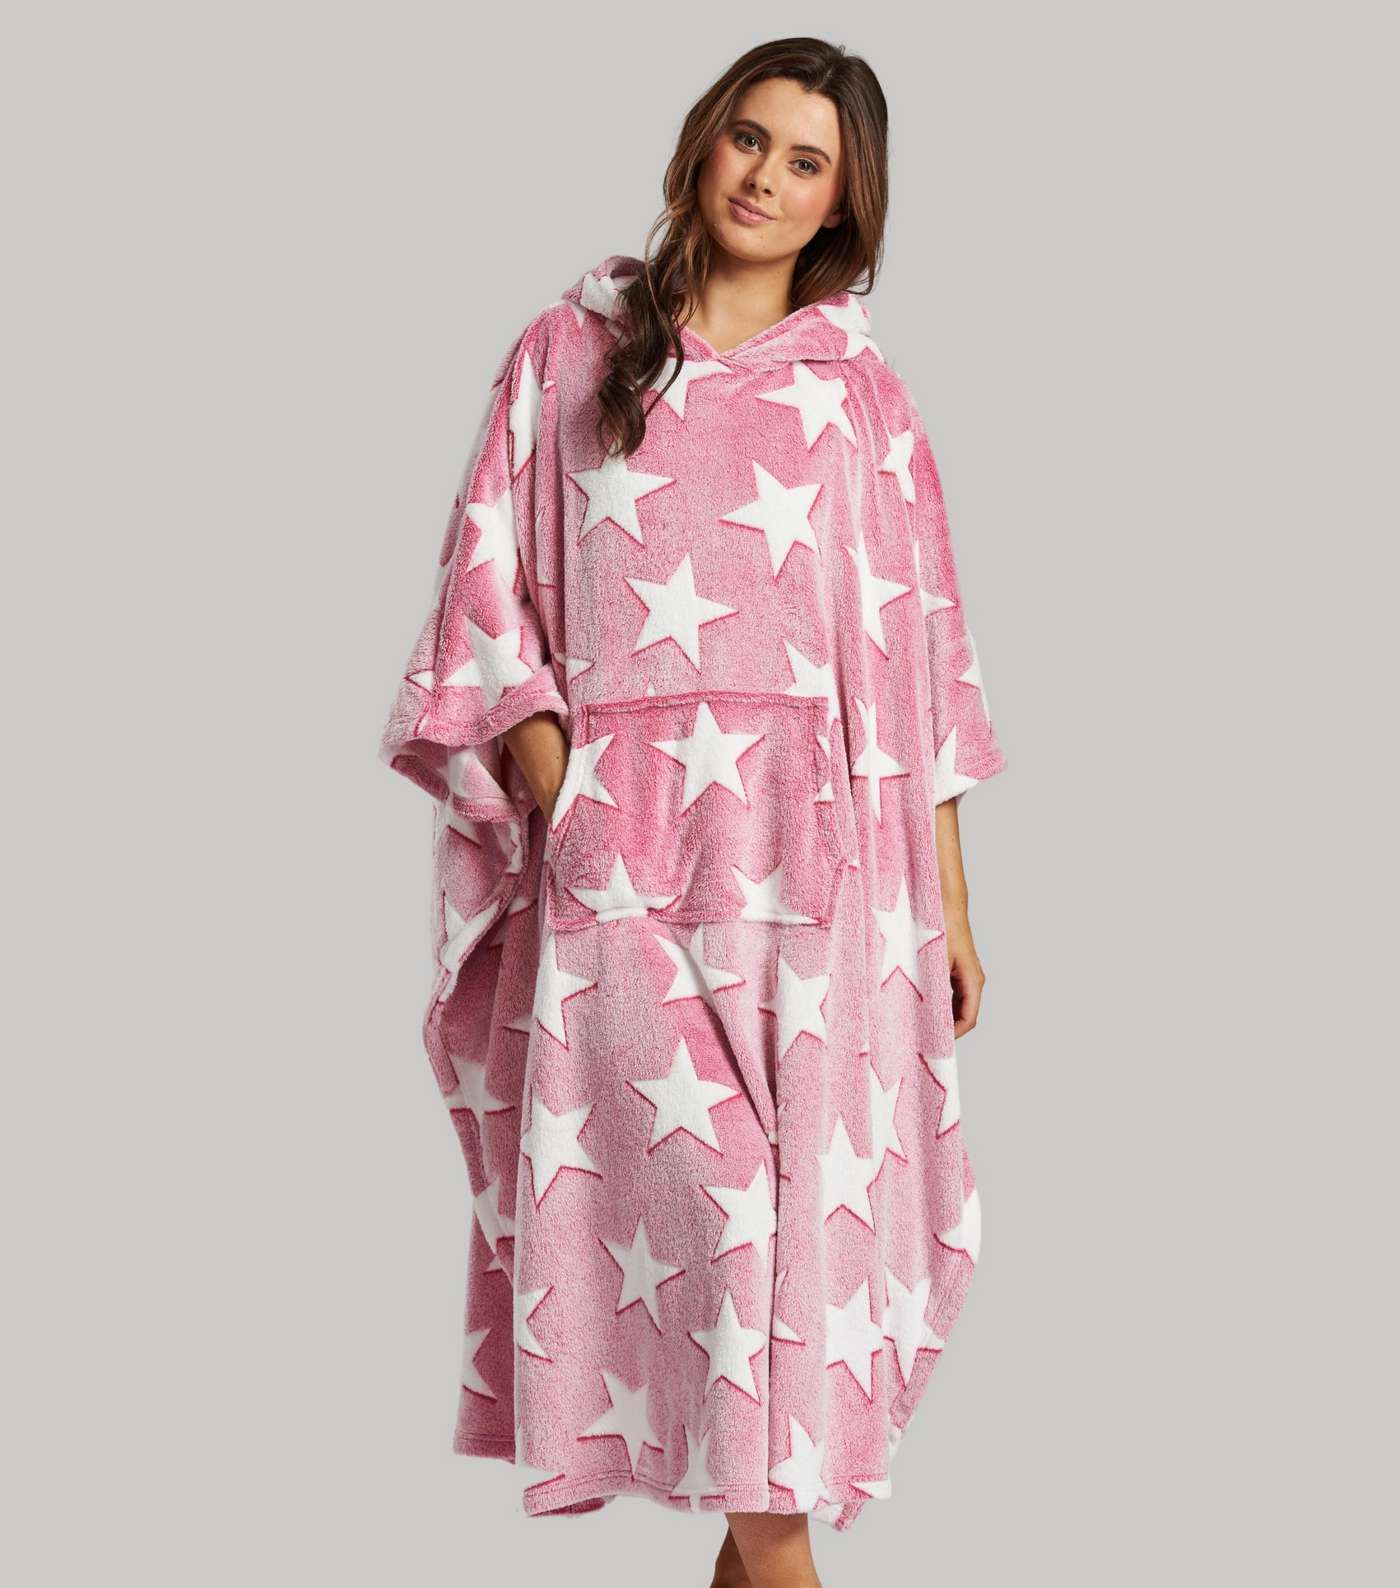 Loungeable Pink Fleece Star Print Blanket Hoodie Image 2